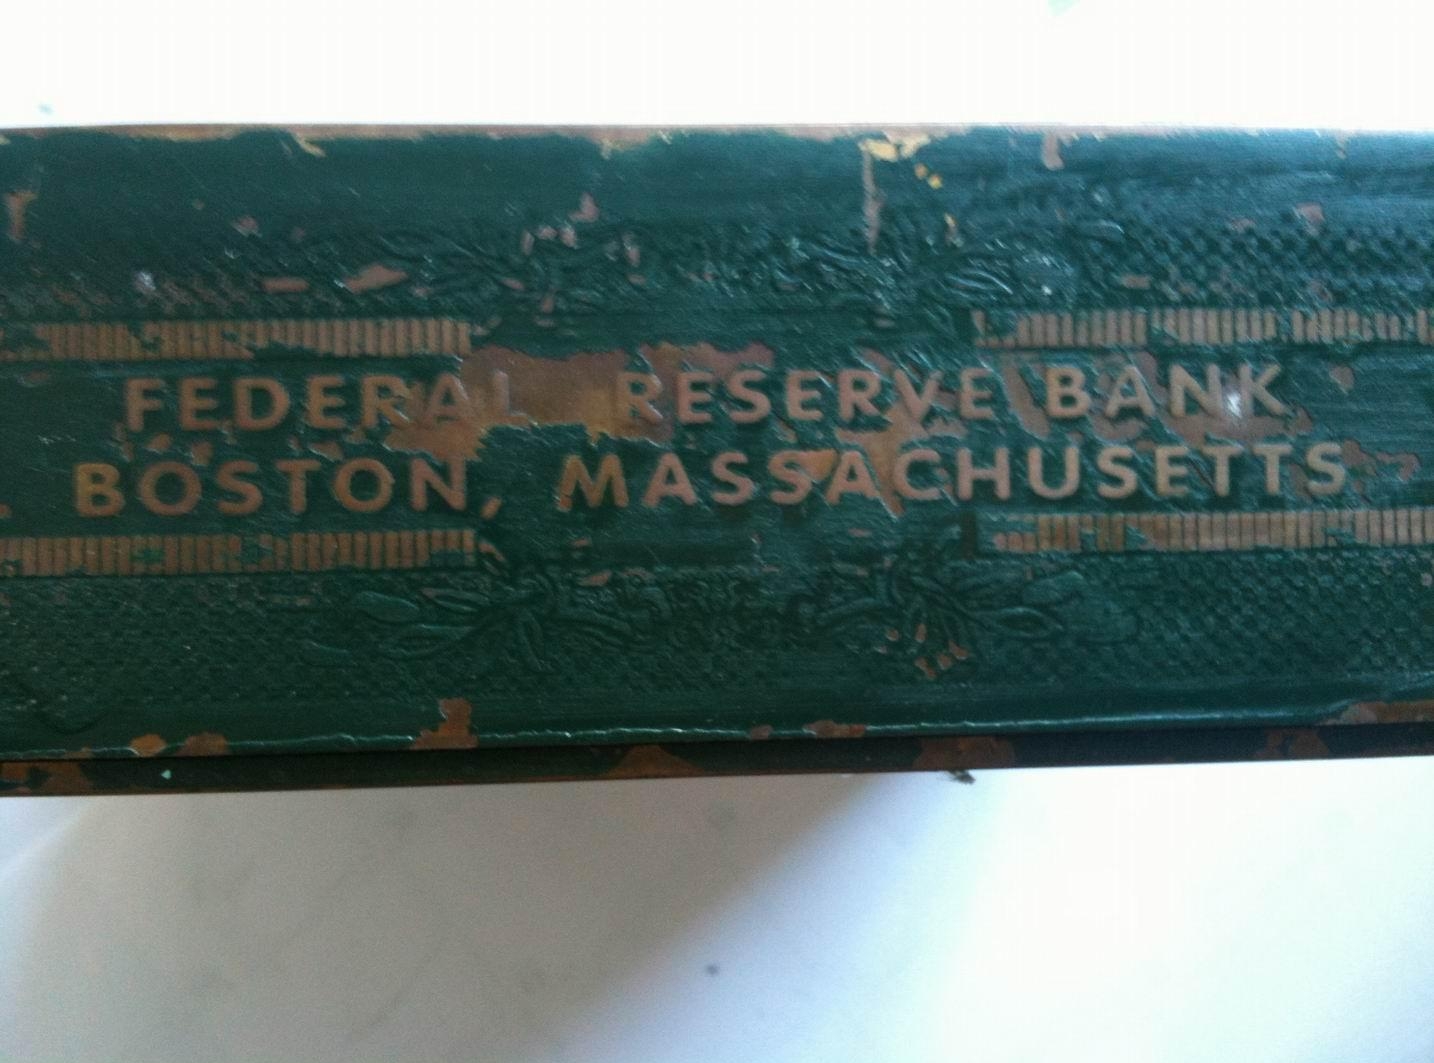  Ящик с золотыми сертификатами Федерального Резерва/JP Morgan в Бостоне, серий 1934, - вид сверху – вниз 